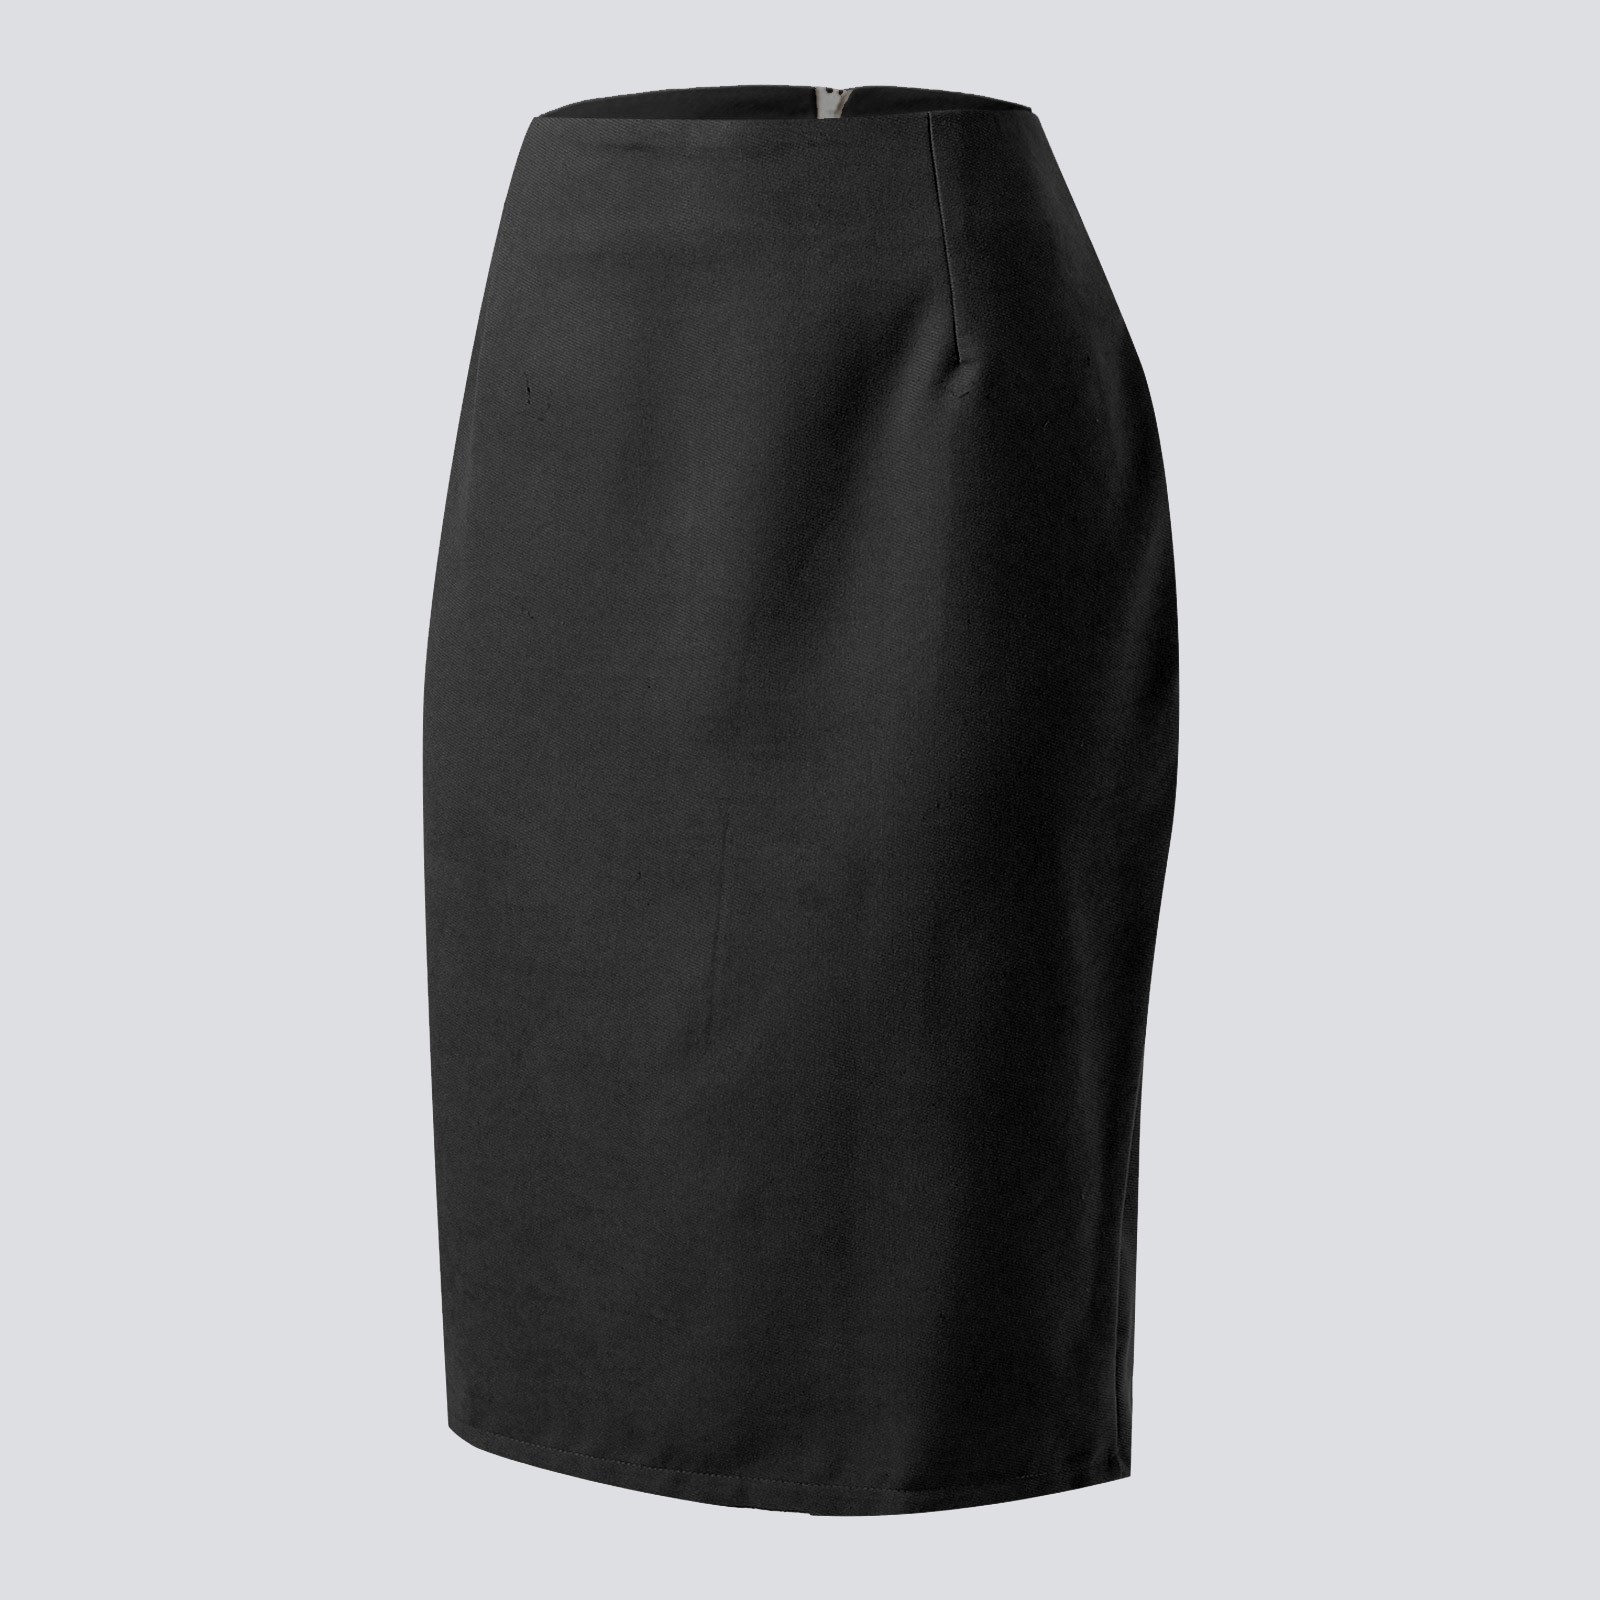 Entyinea Summer Skirts for Women Elegant Vintage Office Knee Length ...